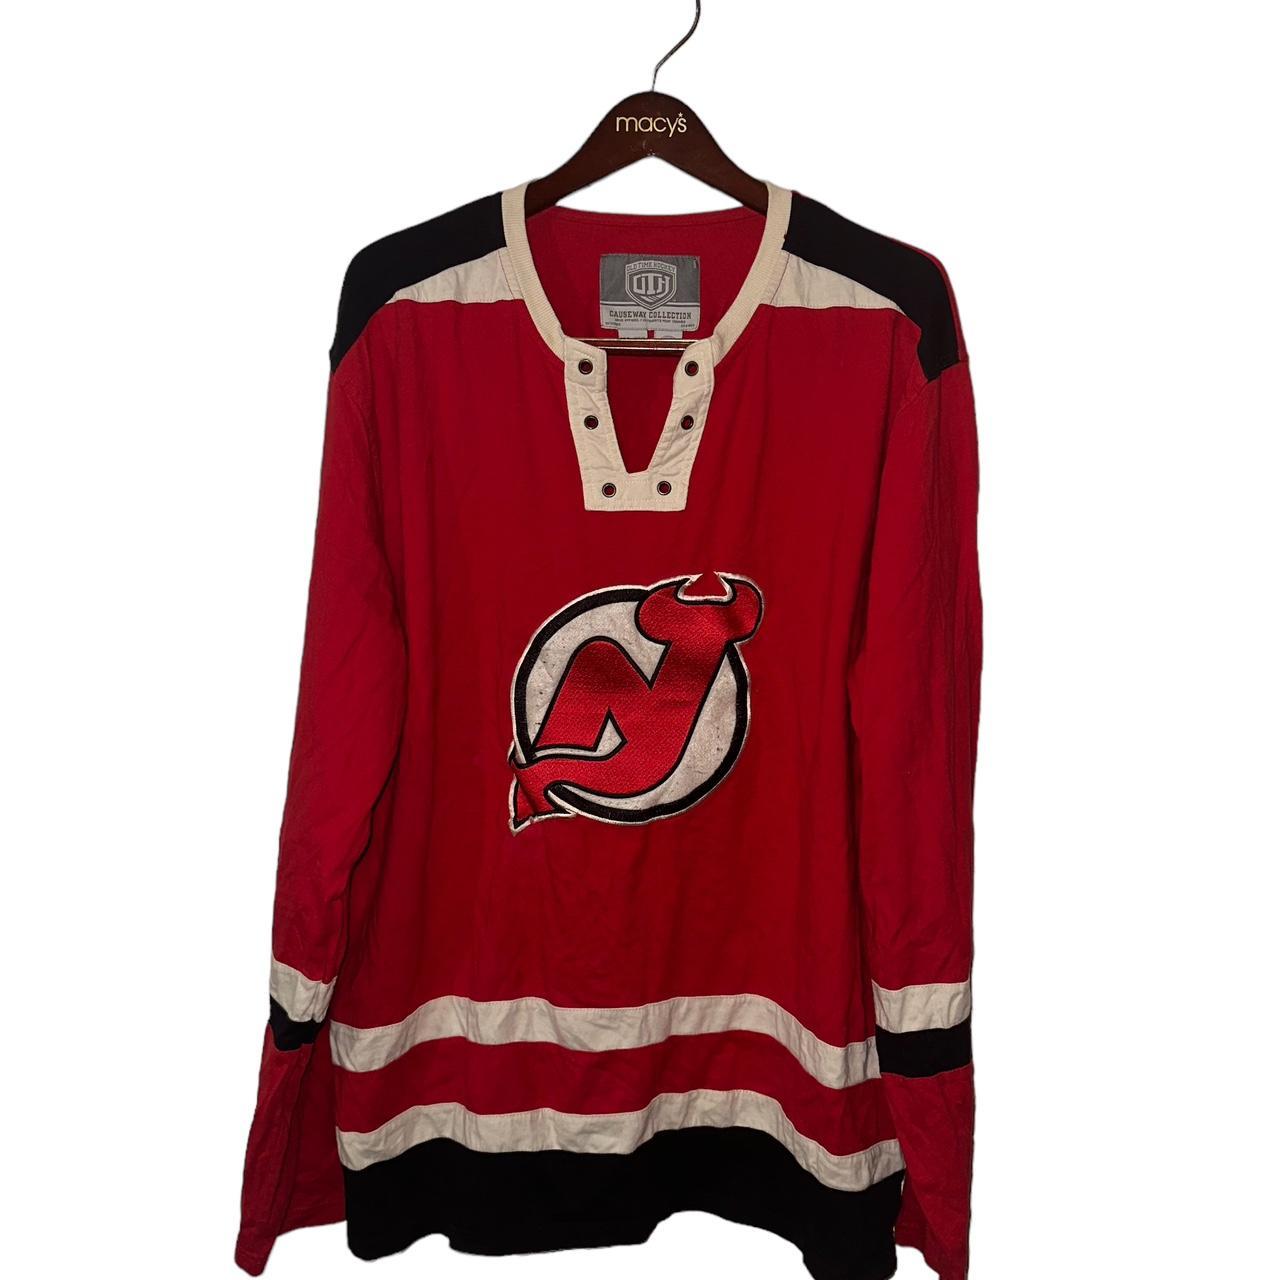 NJ Devils “Old Time Hockey” Collection zip up - Depop